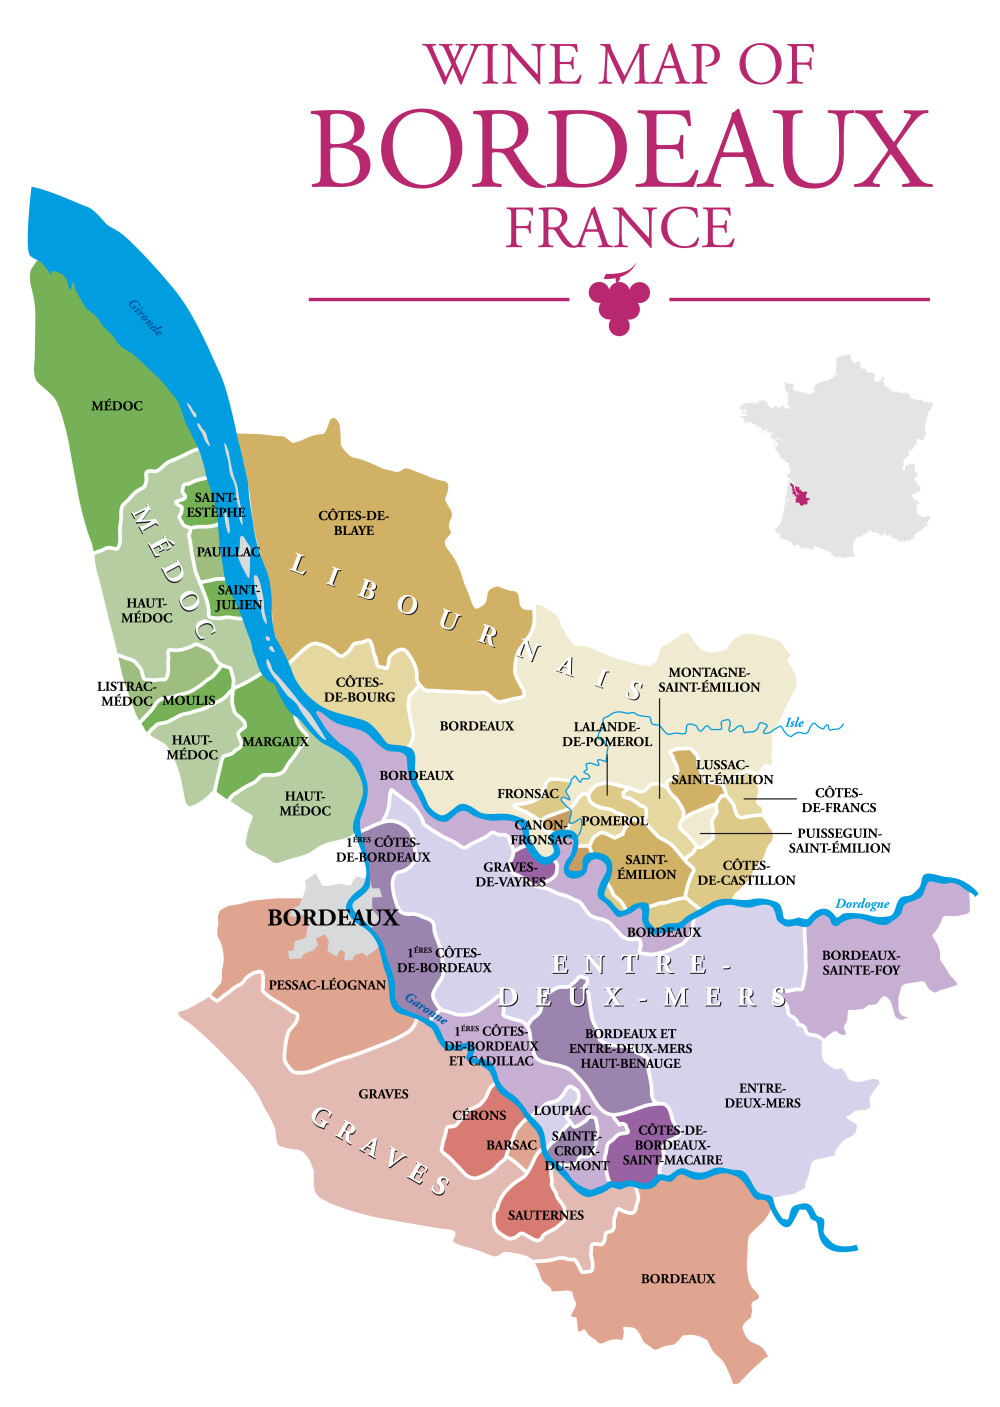 Unterschied zwischen Linkem und Rechtem Ufer in Bordeaux